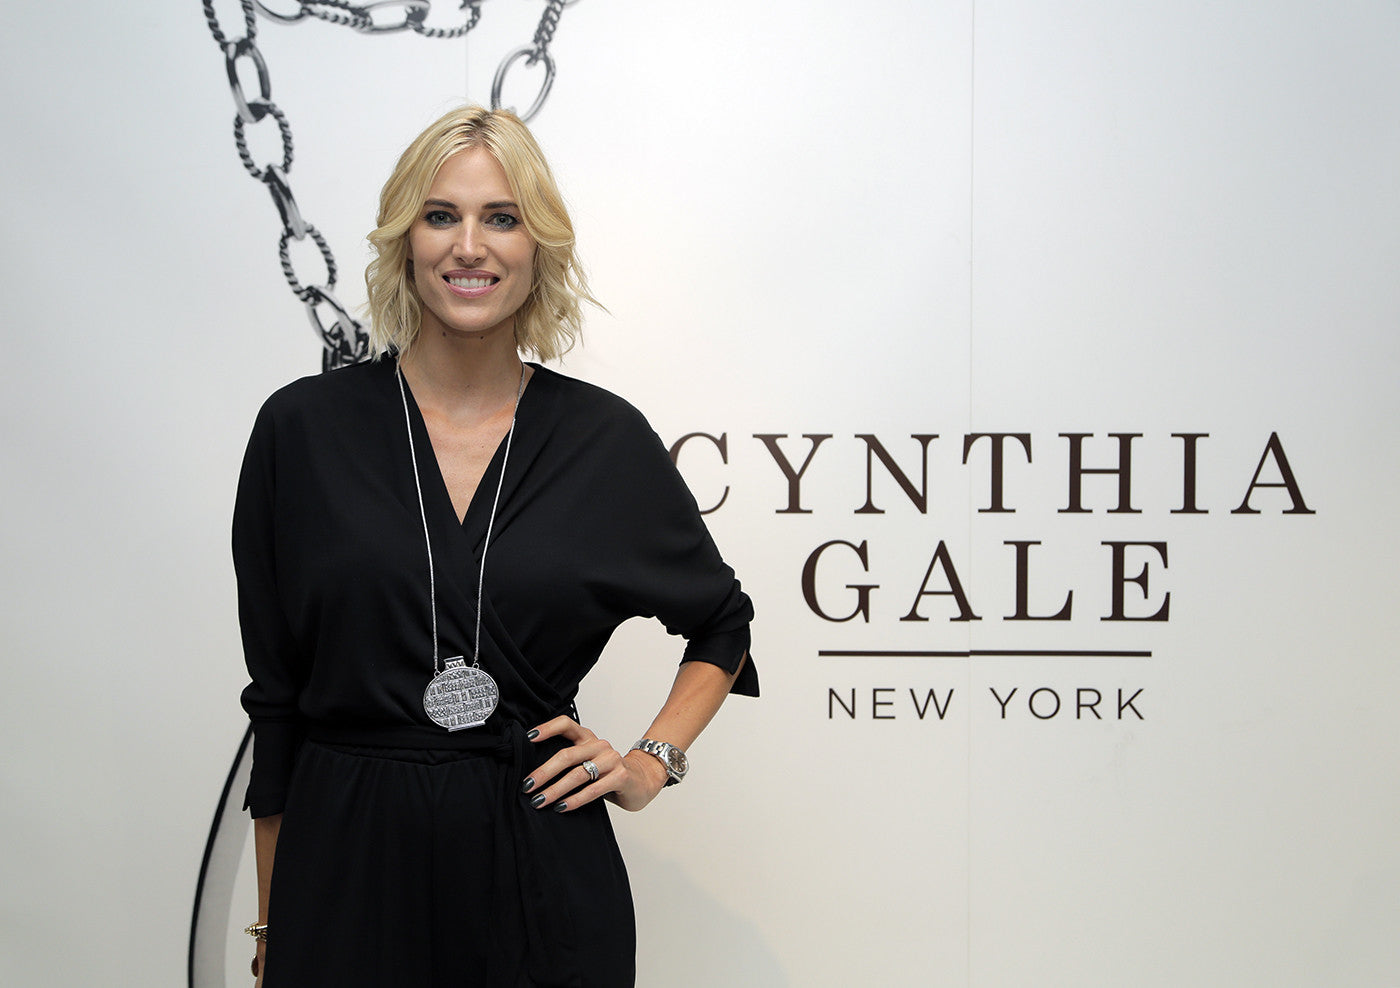 Wiener Werkstatte Statement Urn Necklace - Cynthia Gale New York - 15